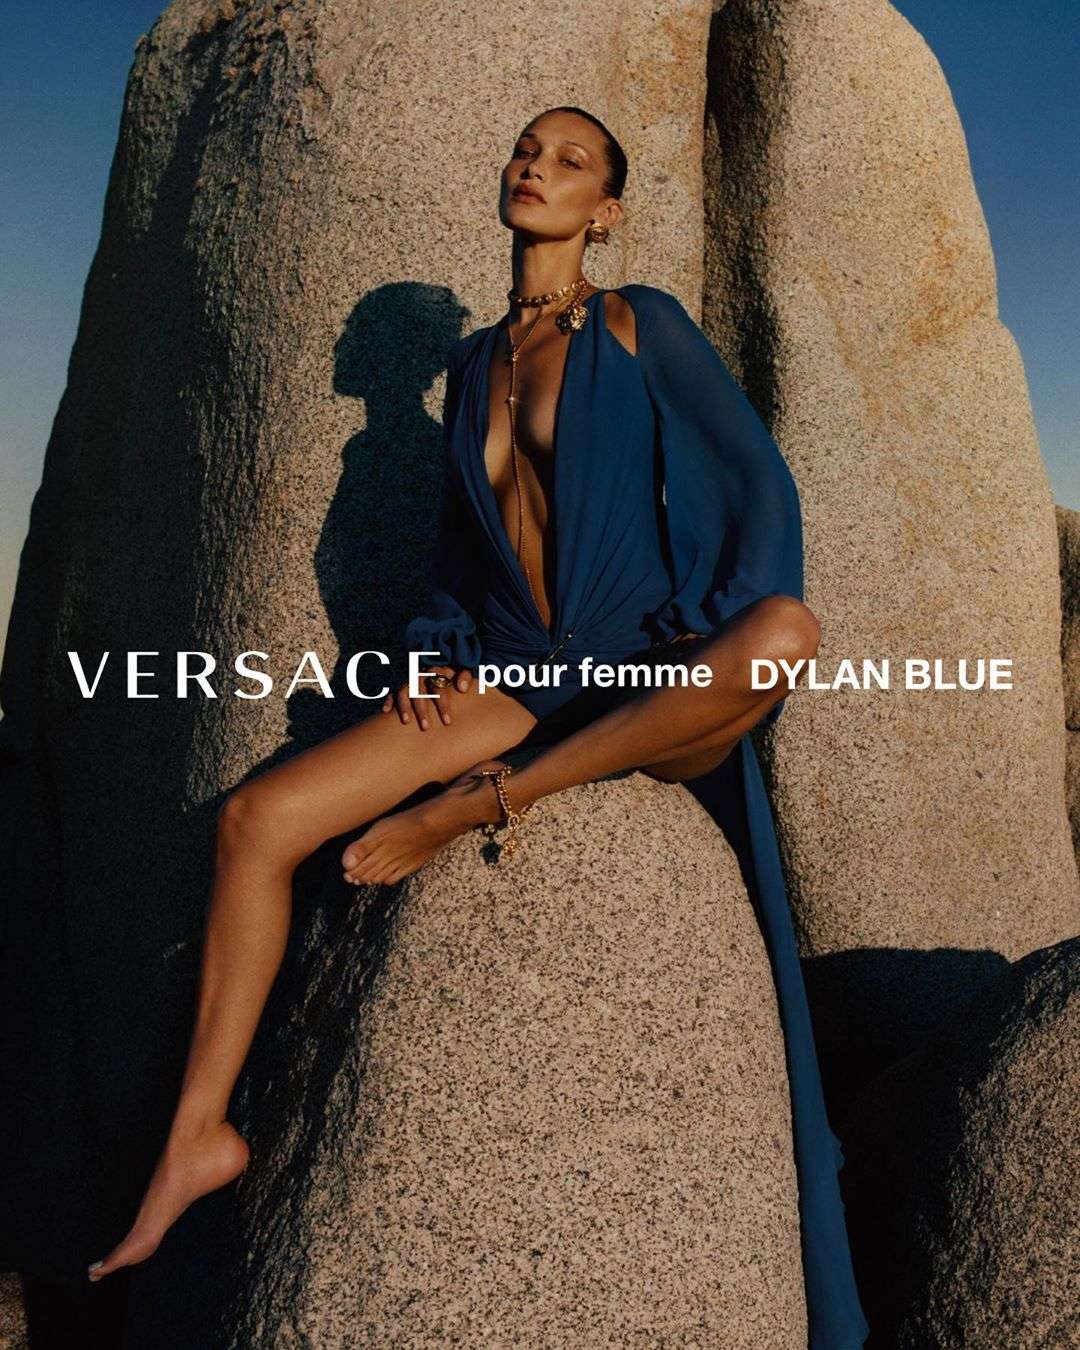 Итальянская чувственность: Белла Хадид и Хейли Бибер снялись в сексуальной рекламе Versace - фото 491419